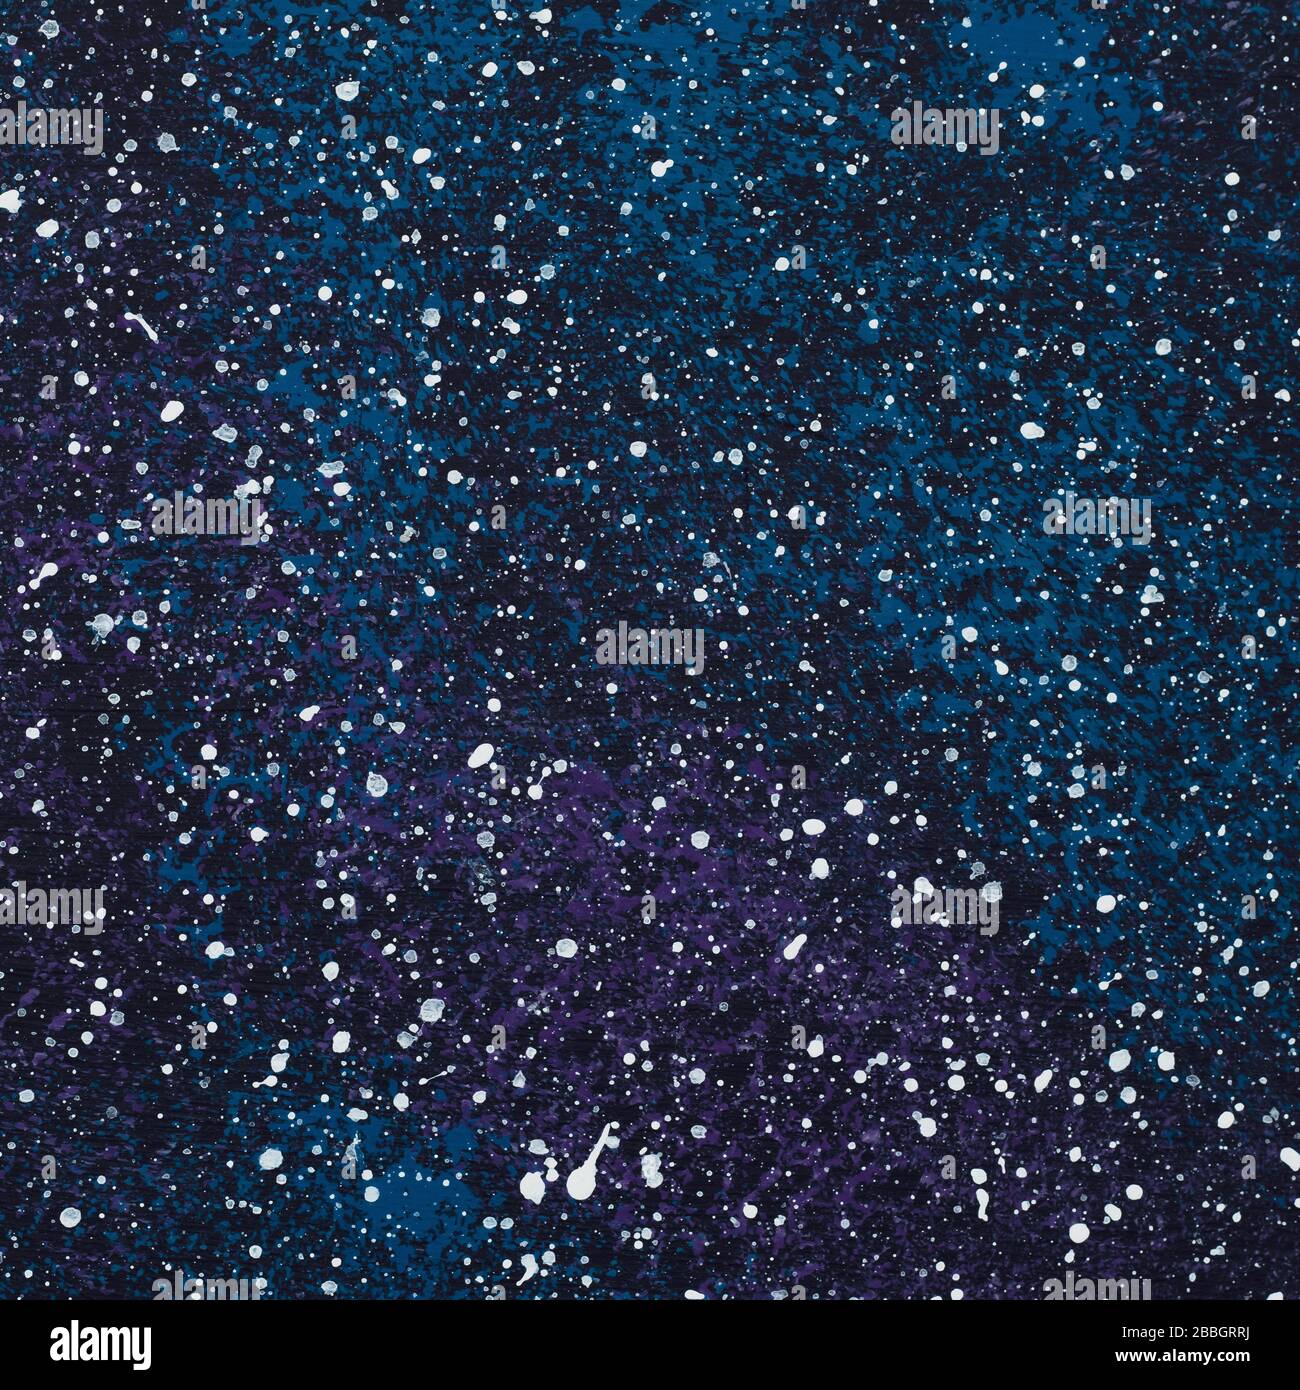 Abstrakter schwarz-blau bemalter Hintergrund mit weißen Blobs, Sternenhimmel-Effekt, Farbe von Gouache auf Leinwand, Acryl. Dunkle Aquarellhintergründe. Stelle Stockfoto